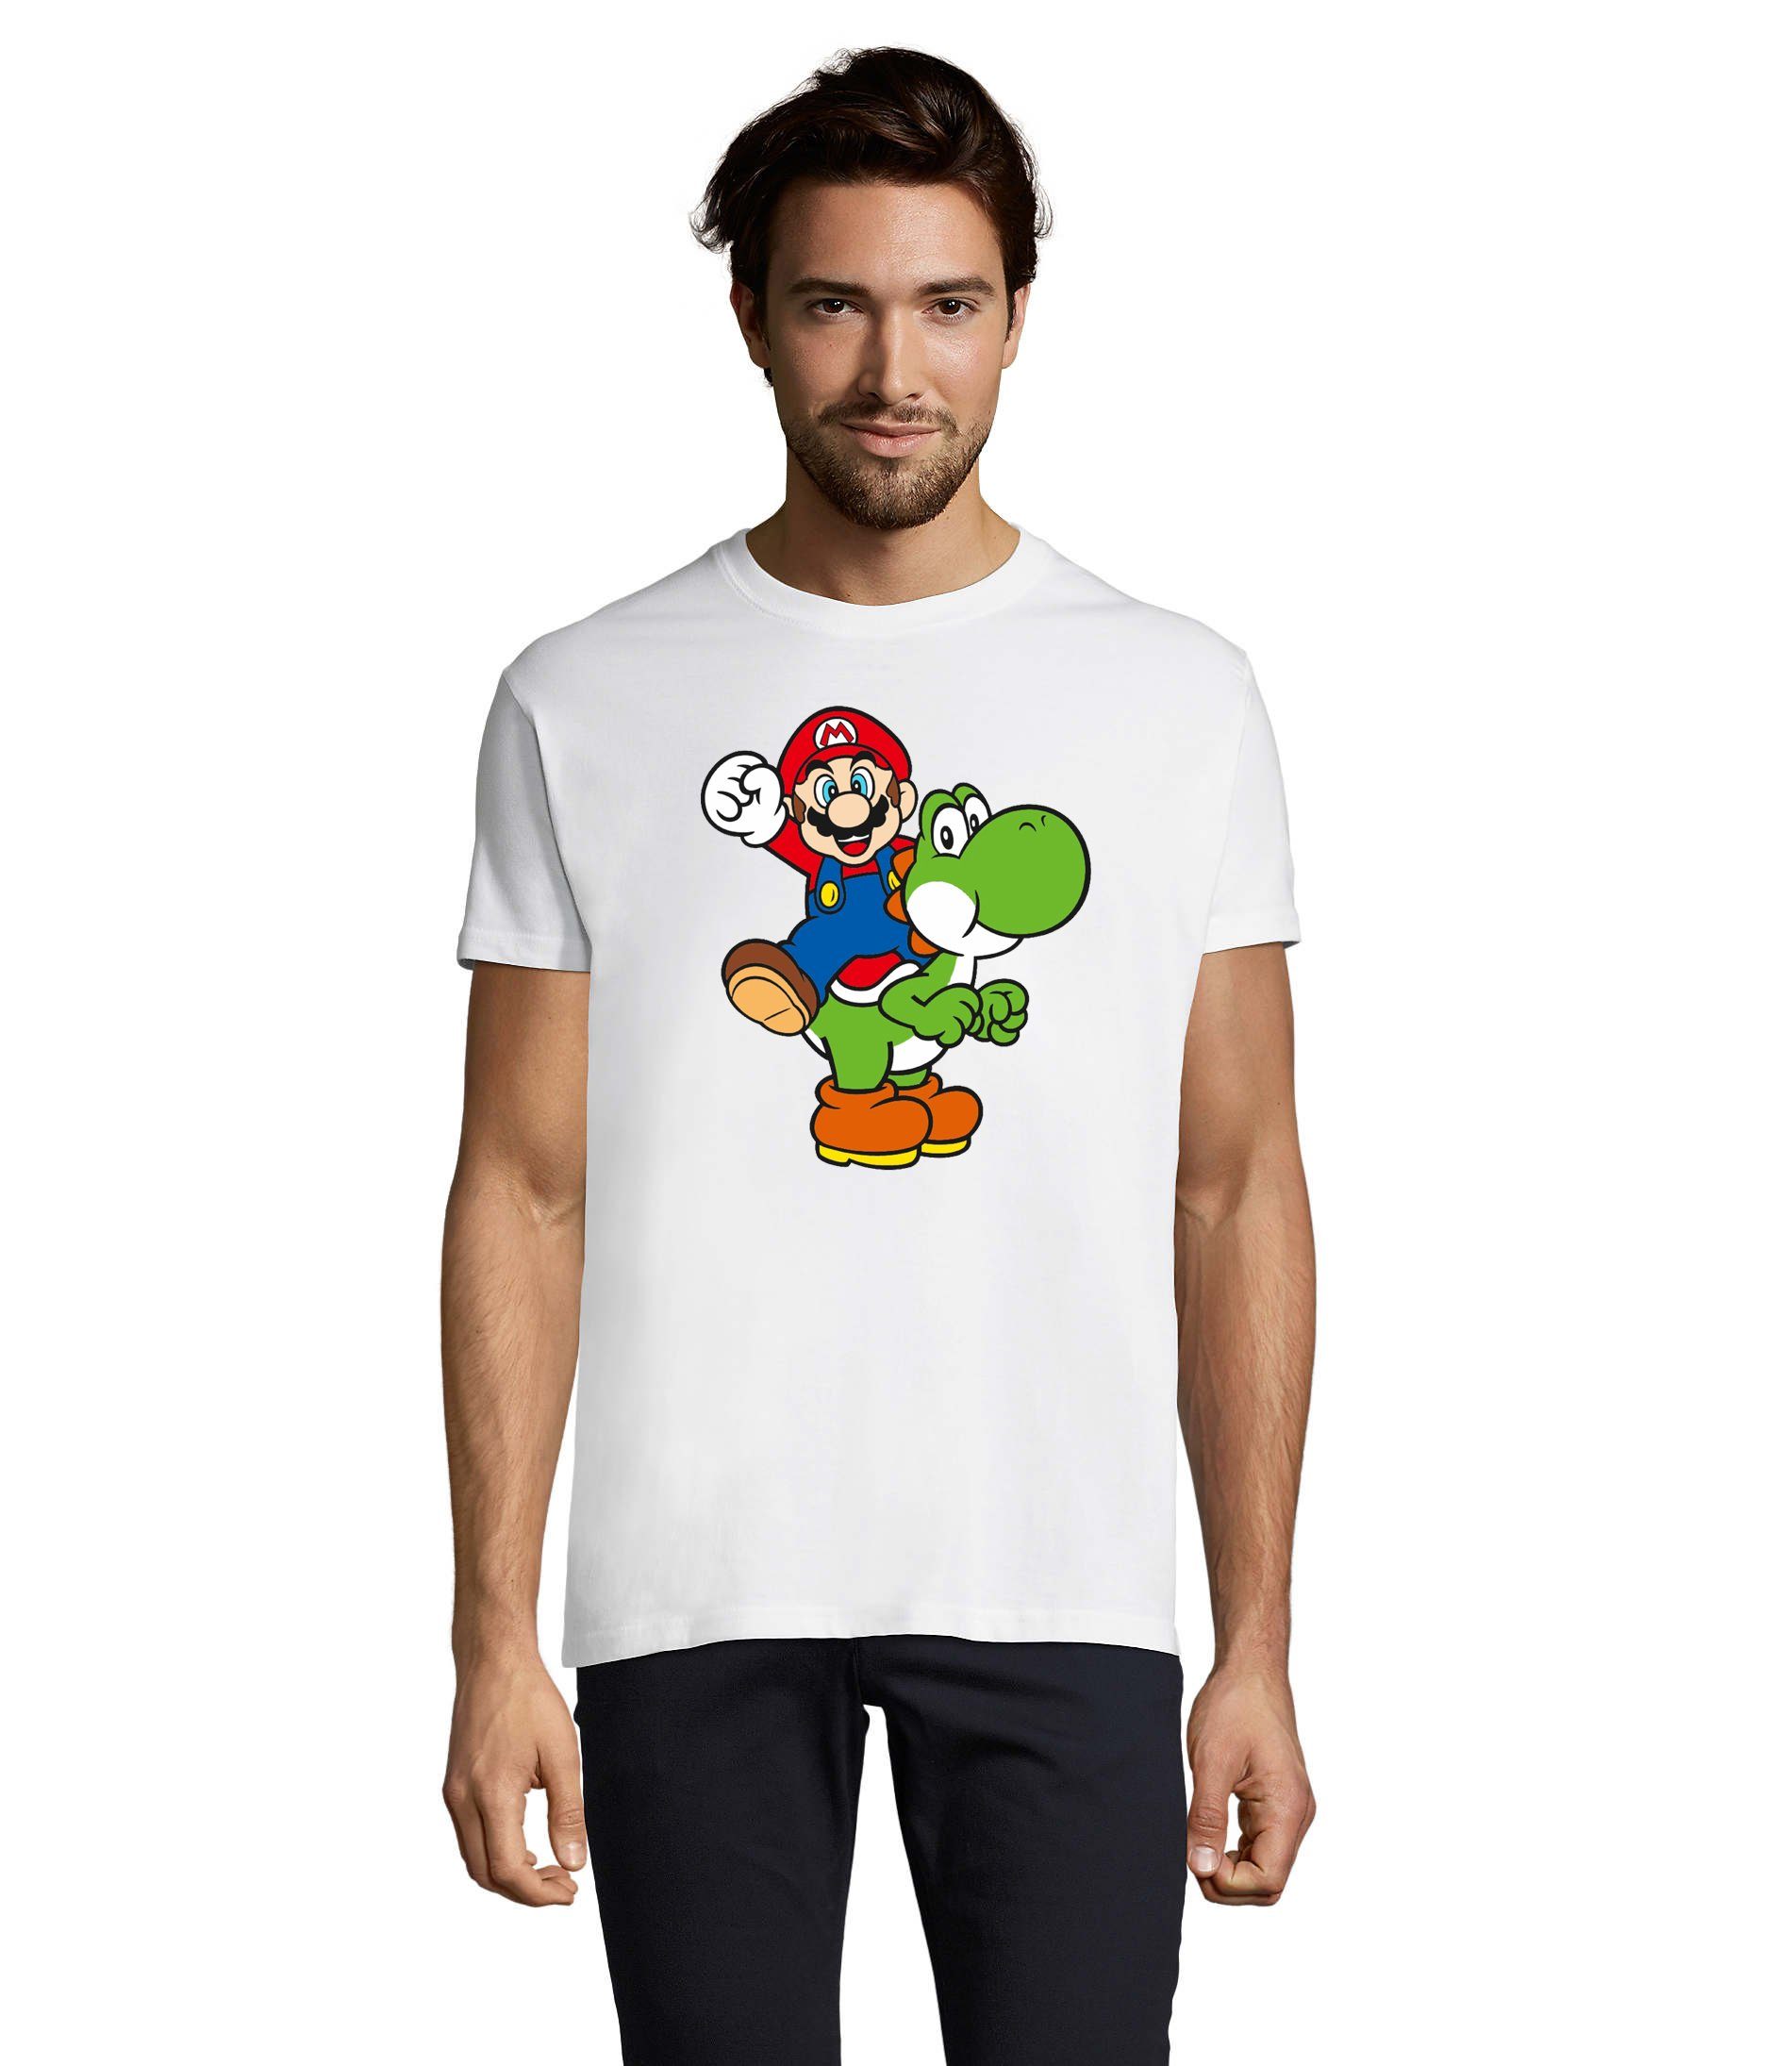 Weiss Herren & Blondie Super Nintendo & Mario Konsole T-Shirt Brownie Luigi Yoshi